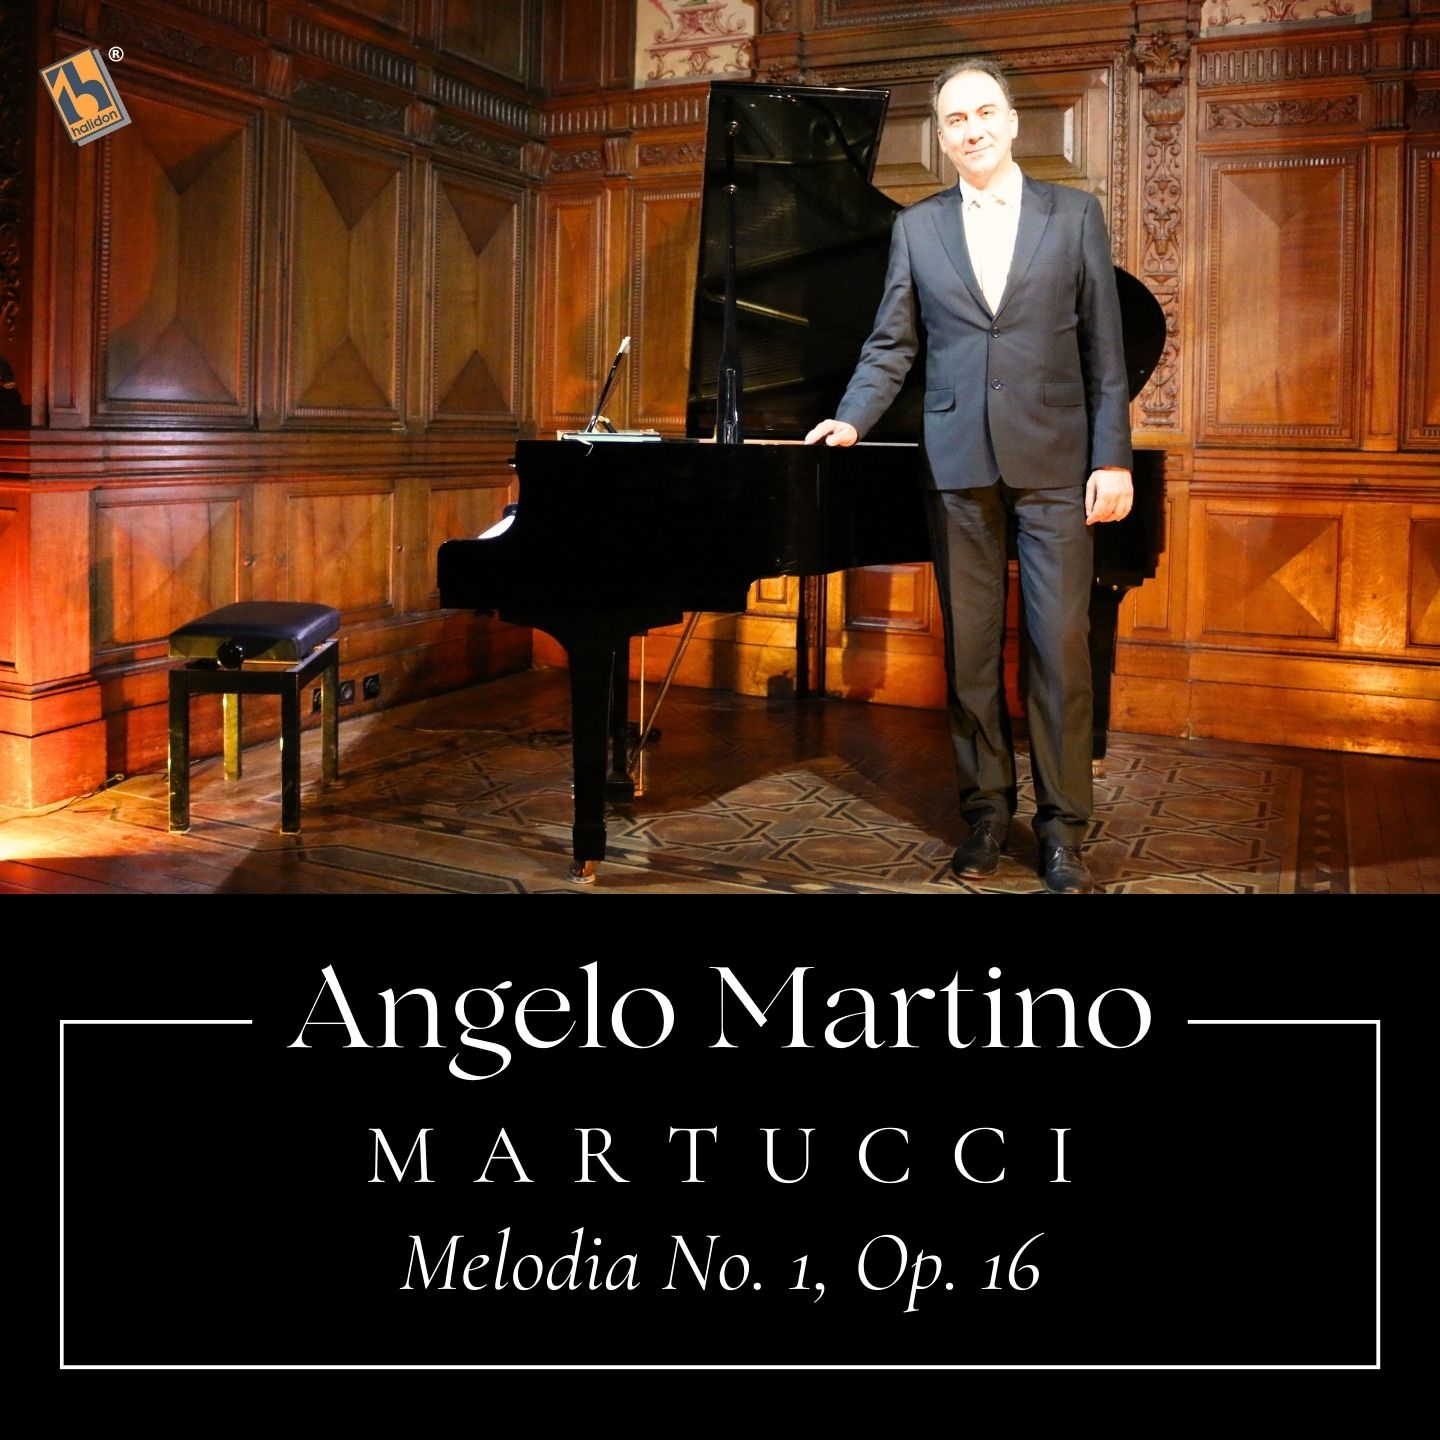 Martucci: Melodia No. 1, Op. 16